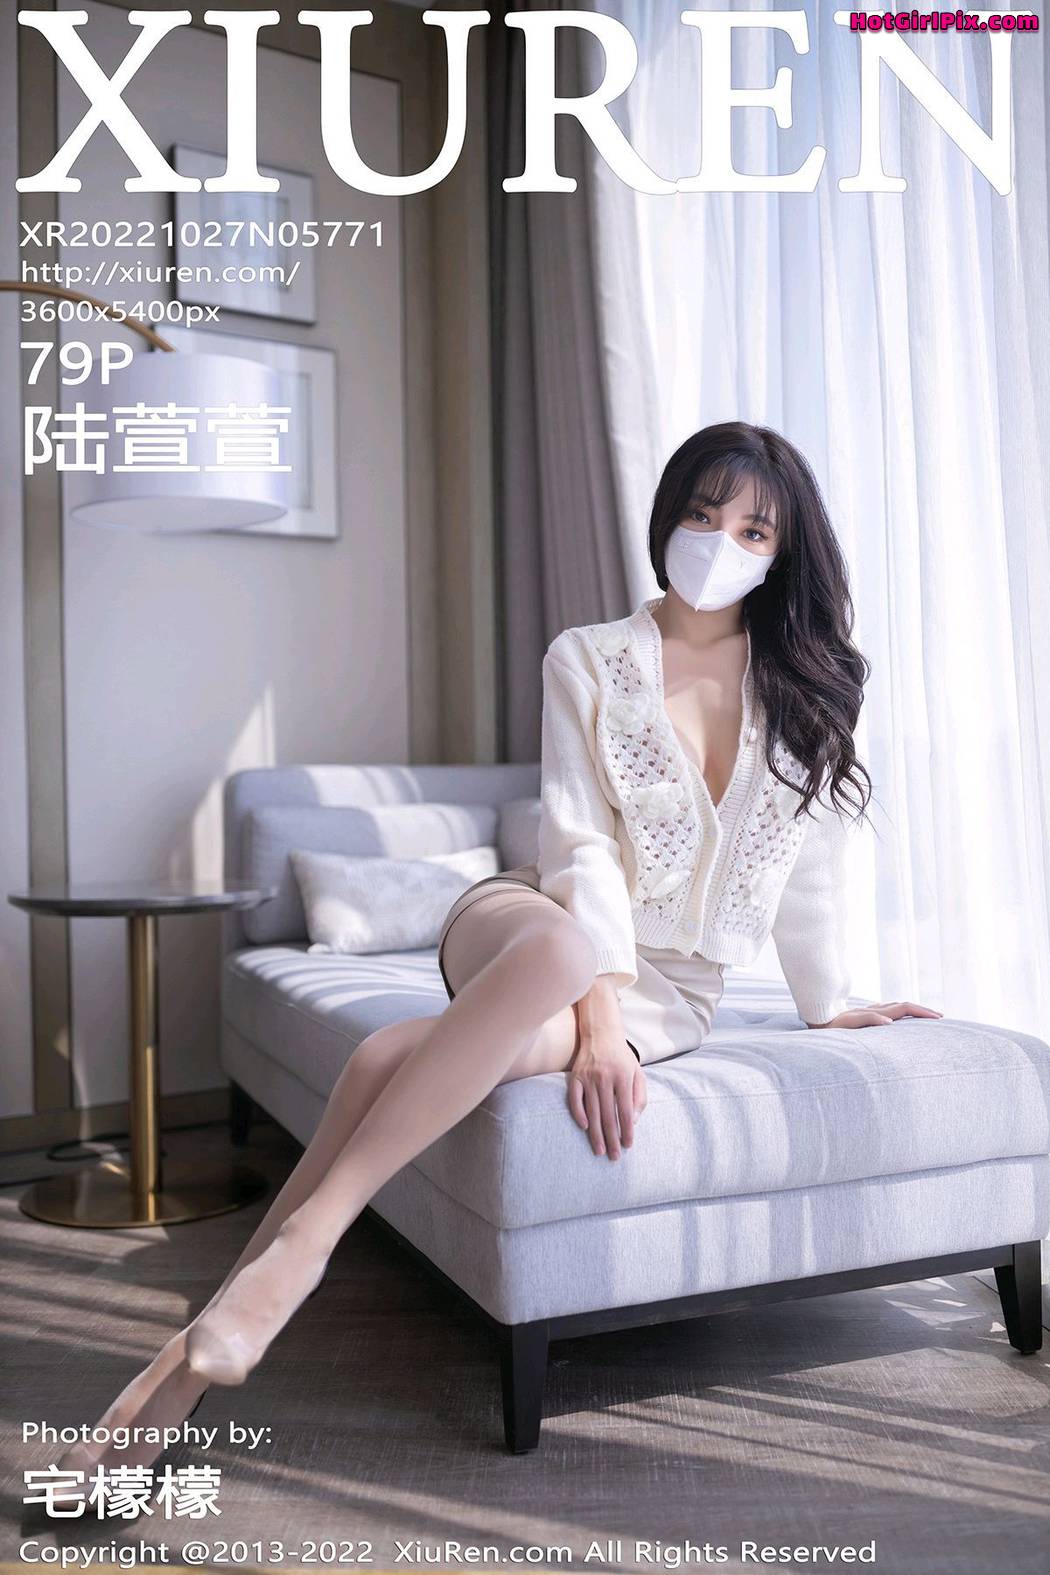 [XIUREN] No.5771 Lu Xuan Xuan 陆萱萱 Cover Photo